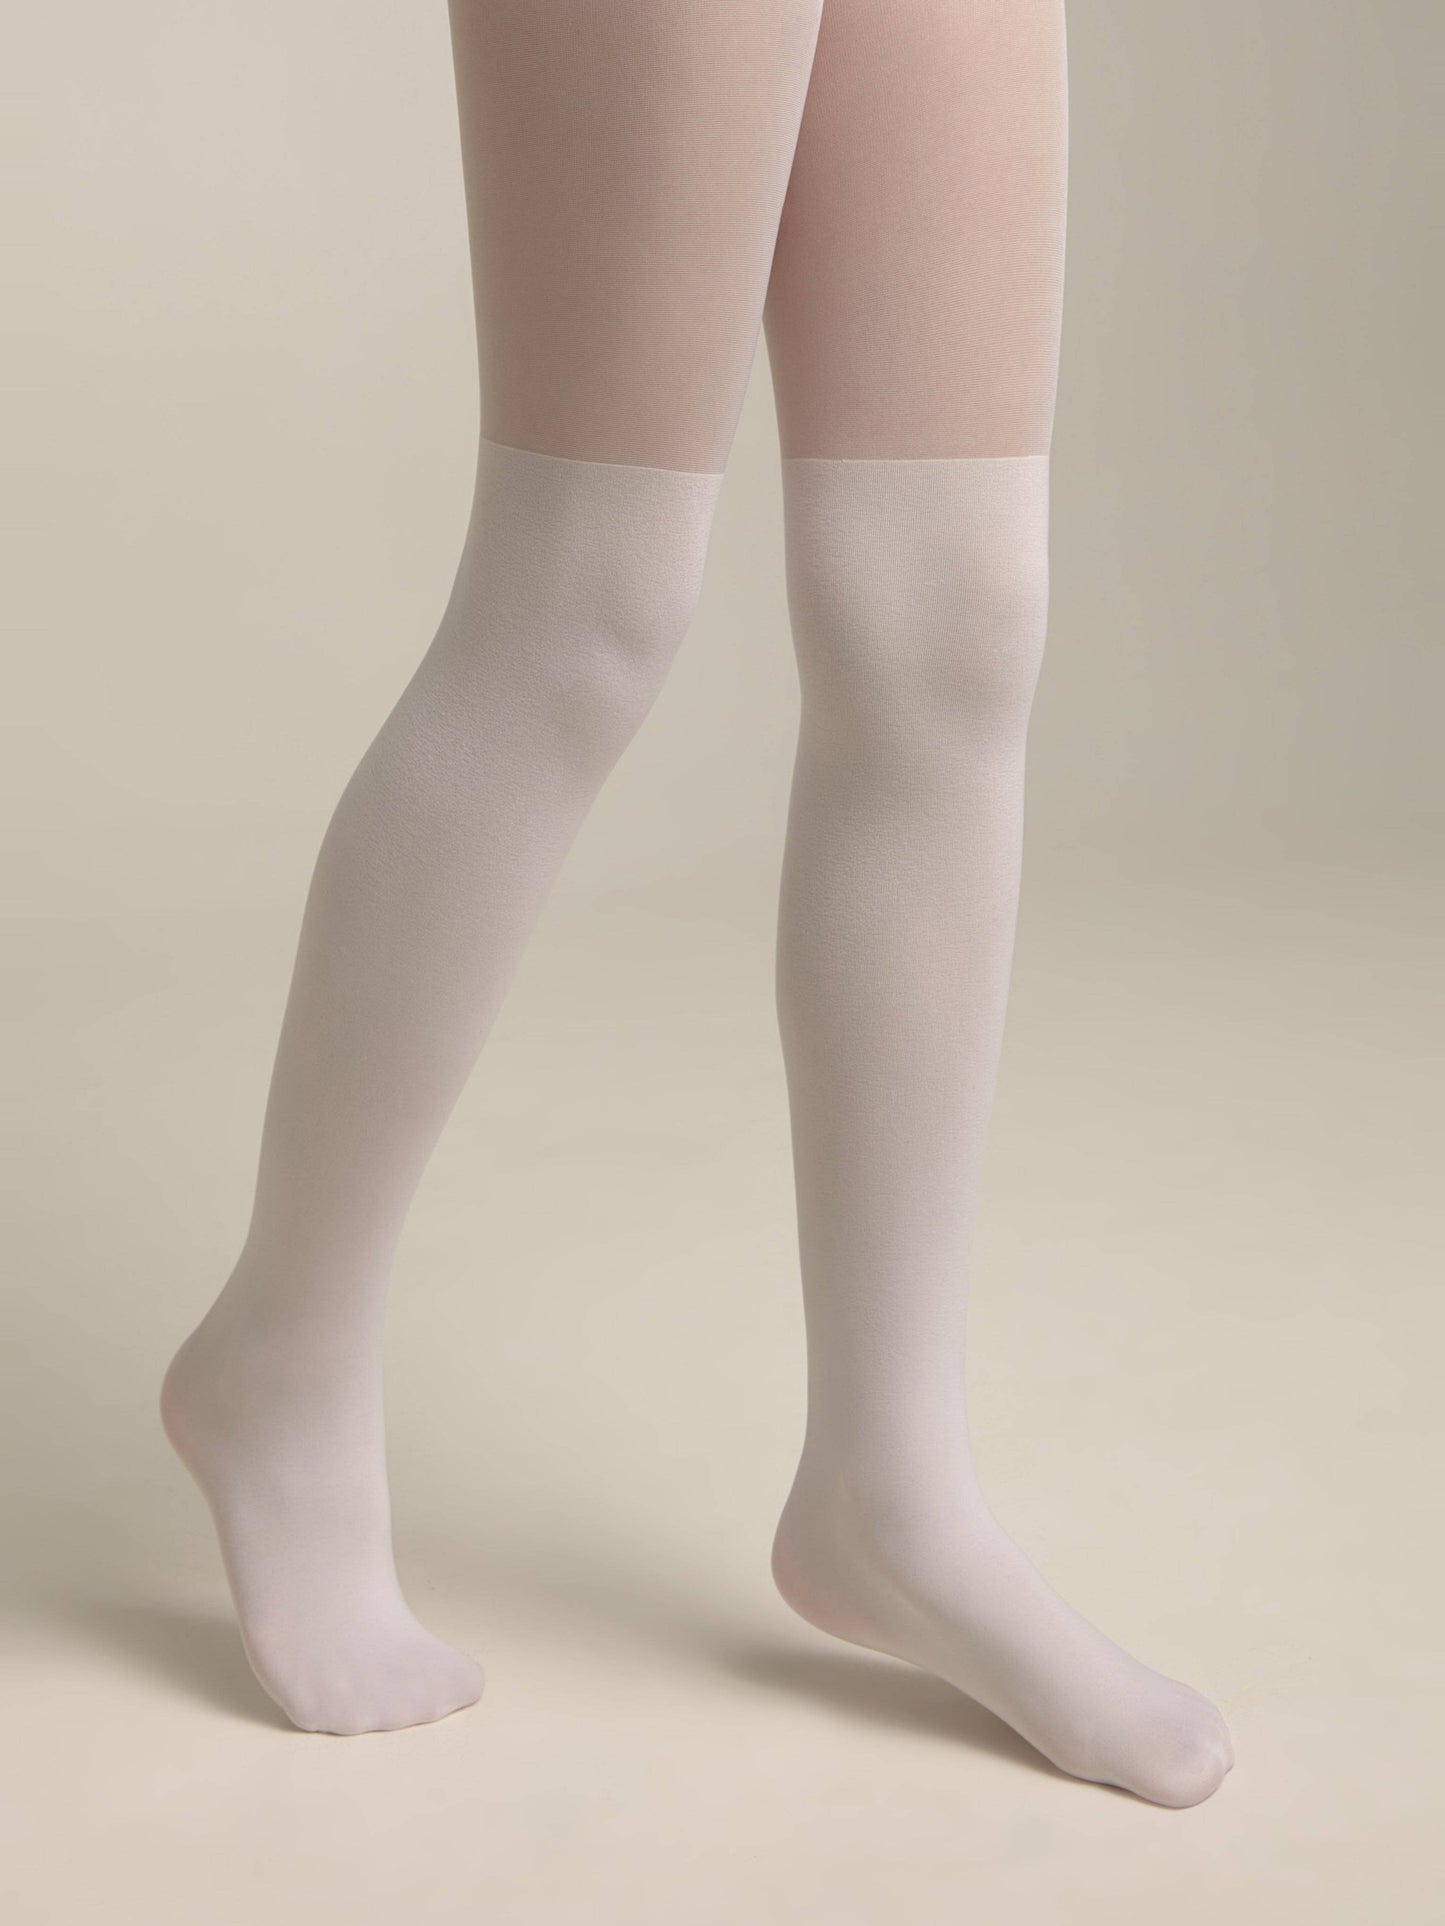 Conte Lolita 60/40 Den - Fantasy Dense Tights For Girls with imitation knee socks - 4yr. 6yr. 8yr. 10yr. 12yr.(22С-3СП)